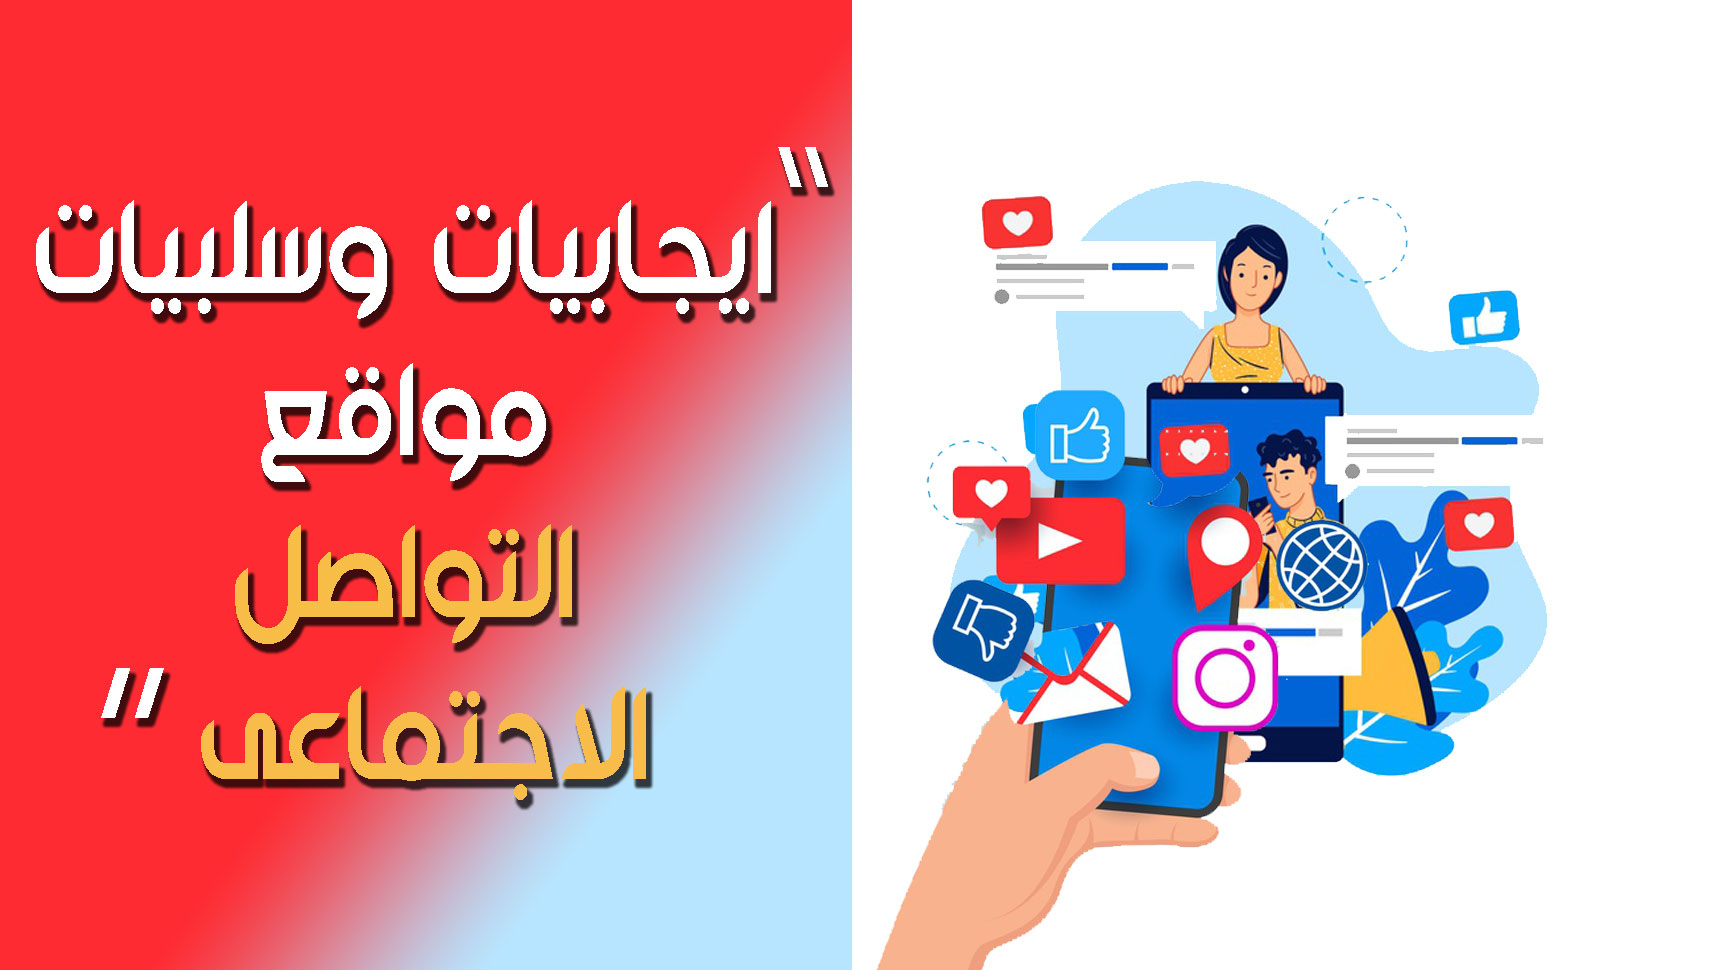 كيف تسهم مواقع التعارف في توسيع دائرة العلاقات الاجتماعية في الإمارات؟ - ما هي مزايا استخدام مواقع التعارف في توسيع دائرة العلاقات الاجتماعية